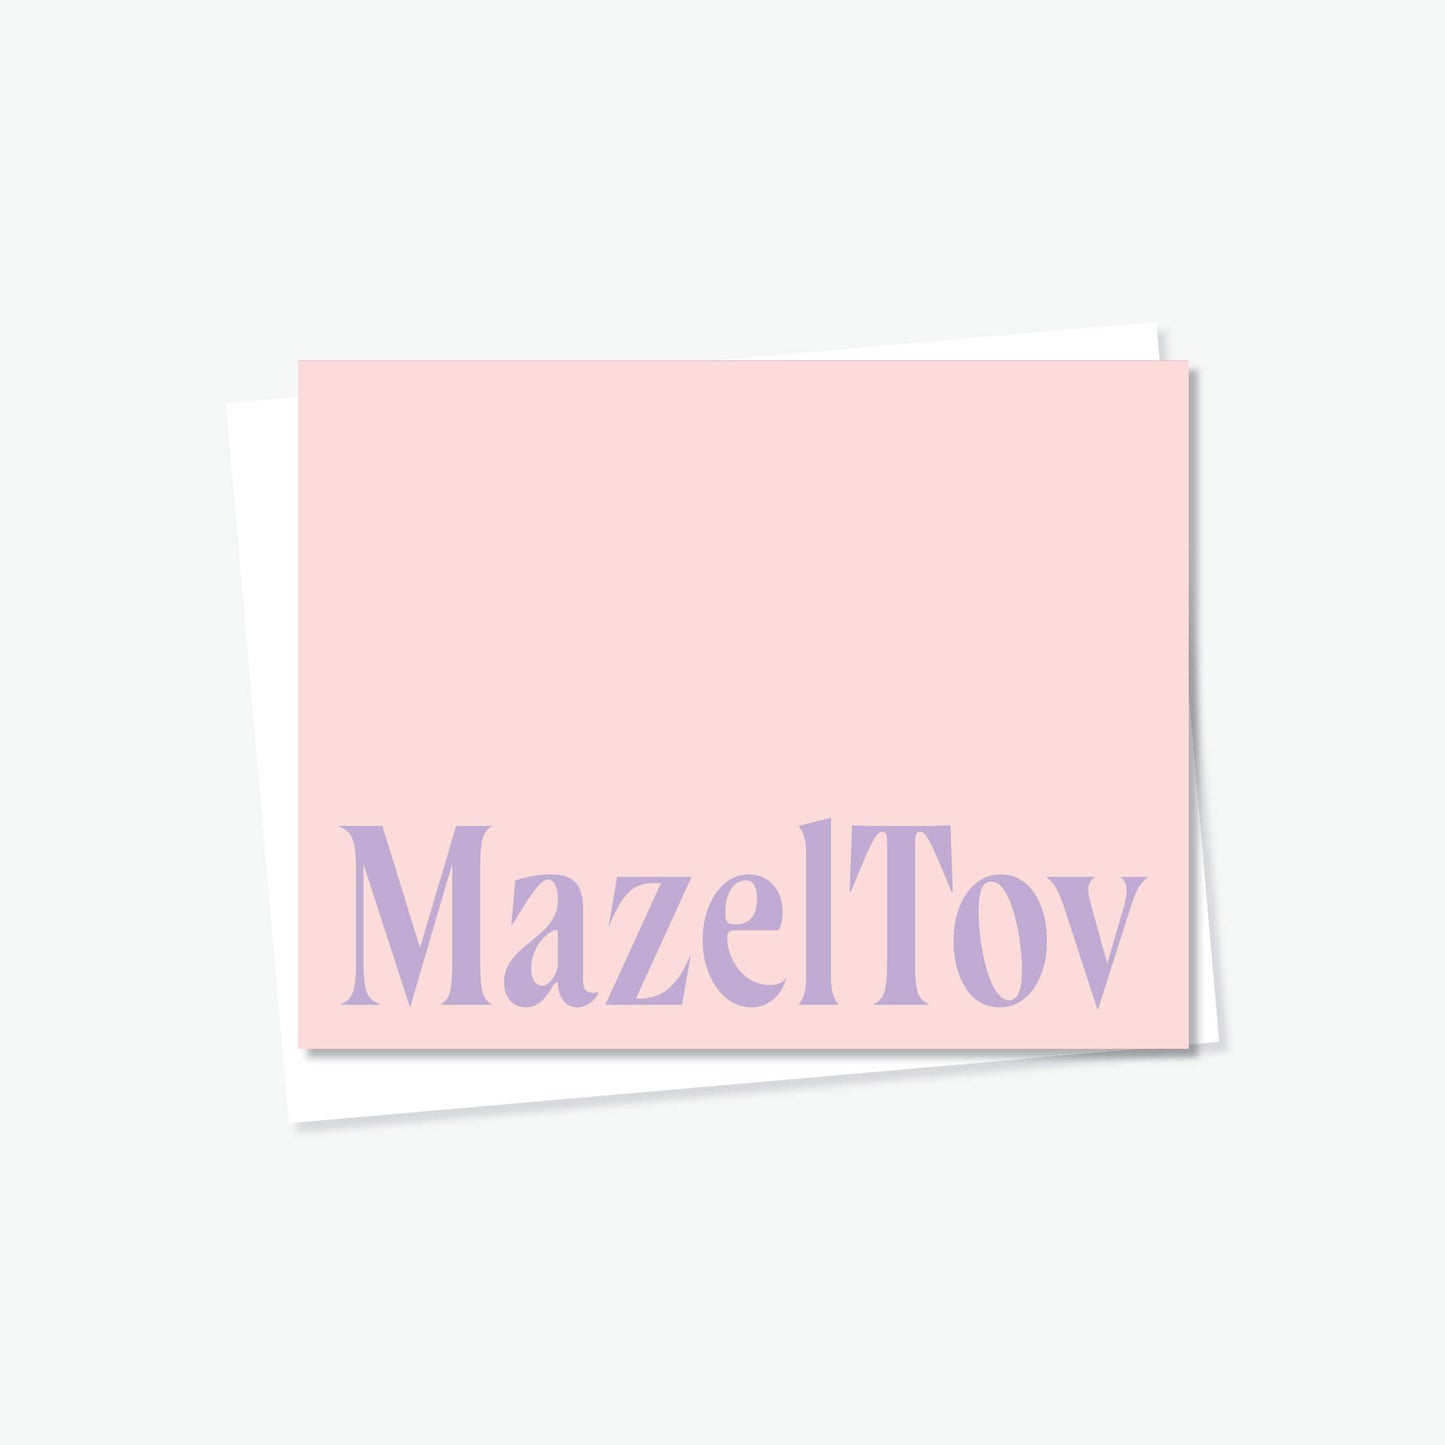 Mazel Tov in Pink